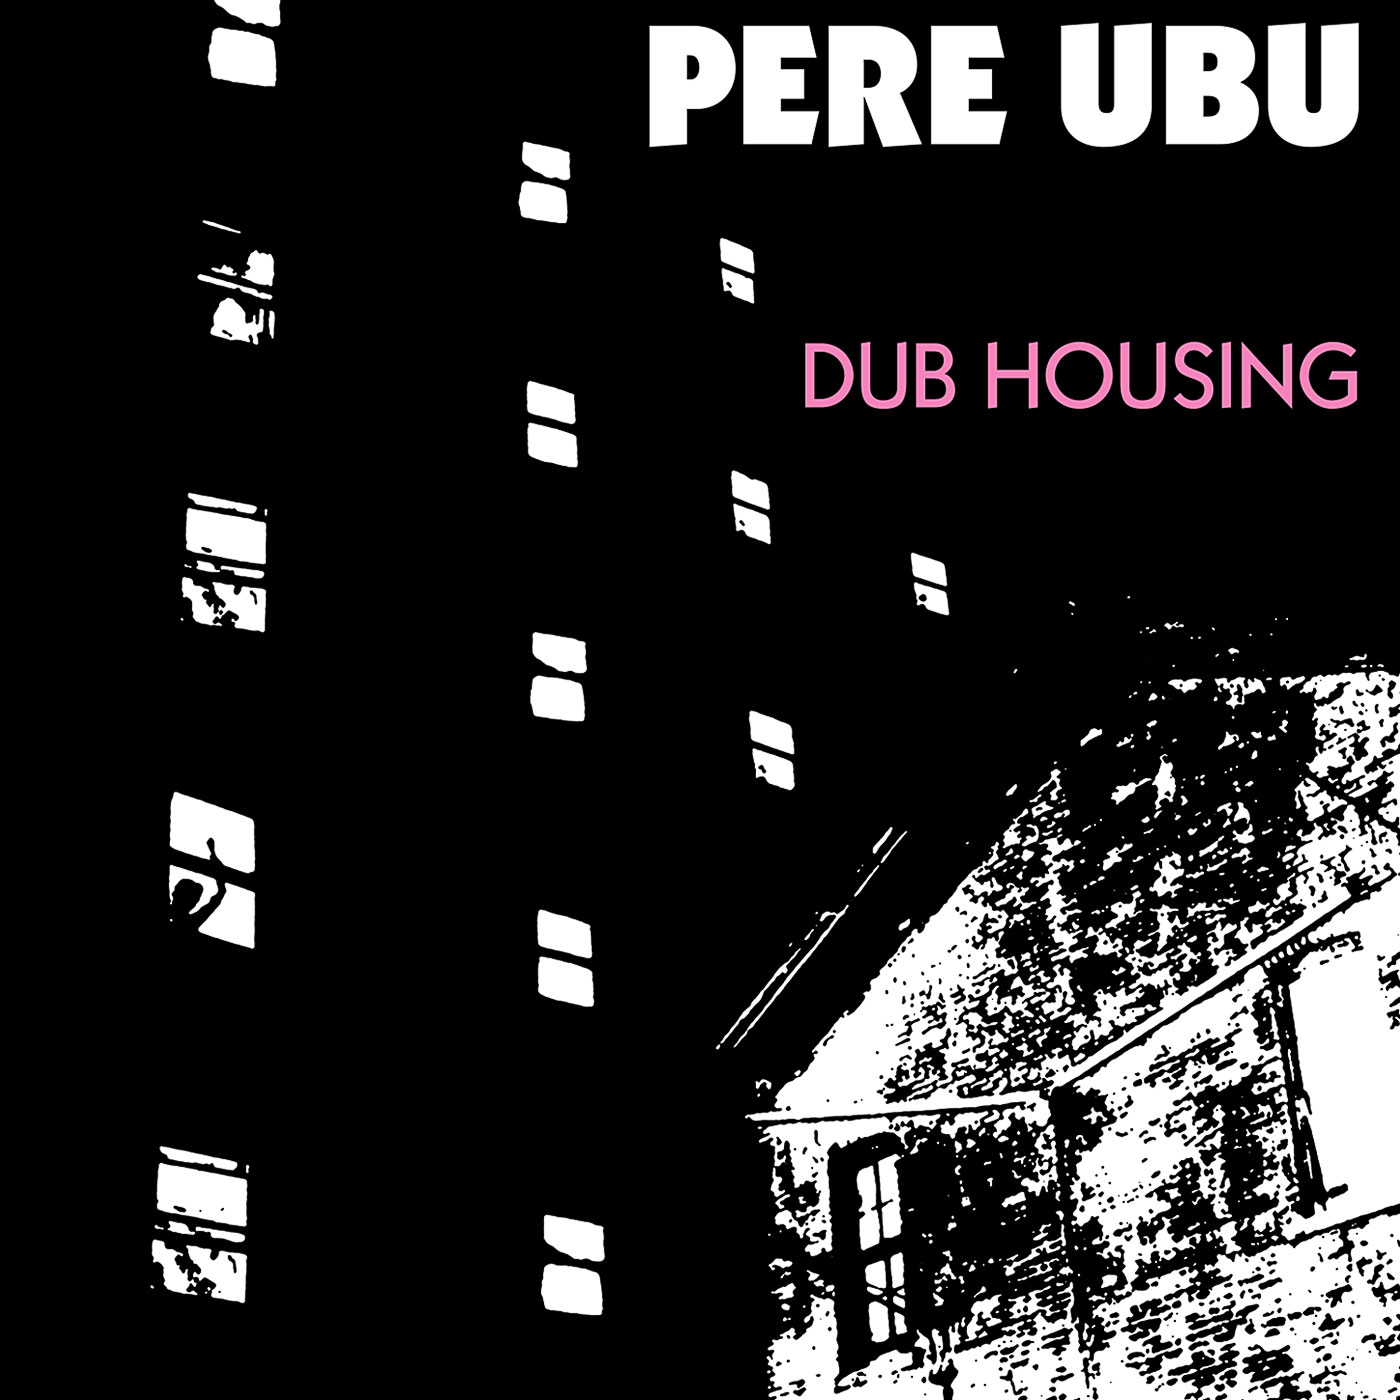 399 Pere Ubu – Dub Housing